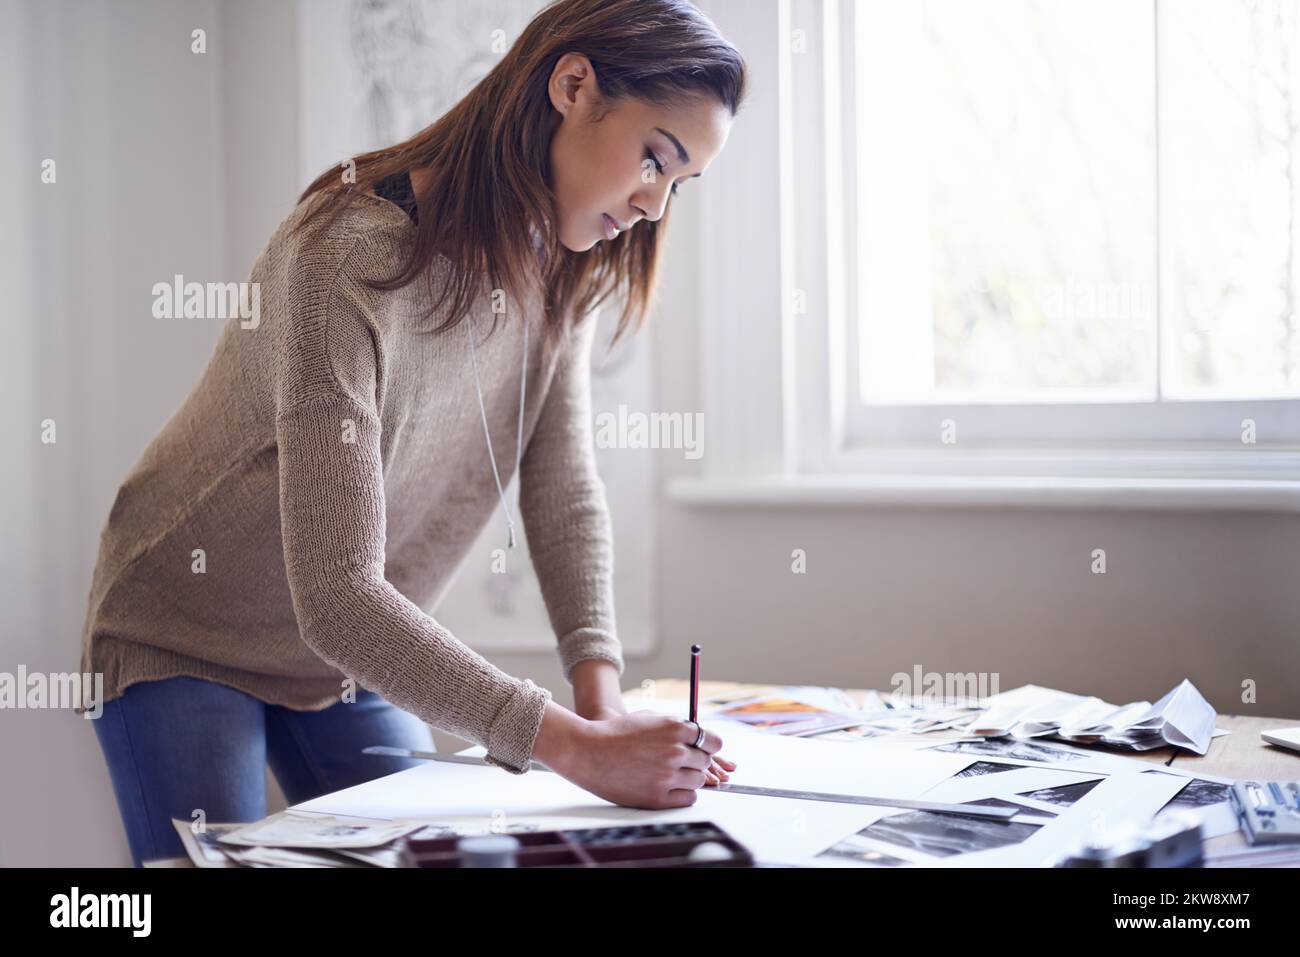 Das perfekte Portfolio. Eine junge Frau, die zu Hause an ihrem Portfolio arbeitet. Stockfoto